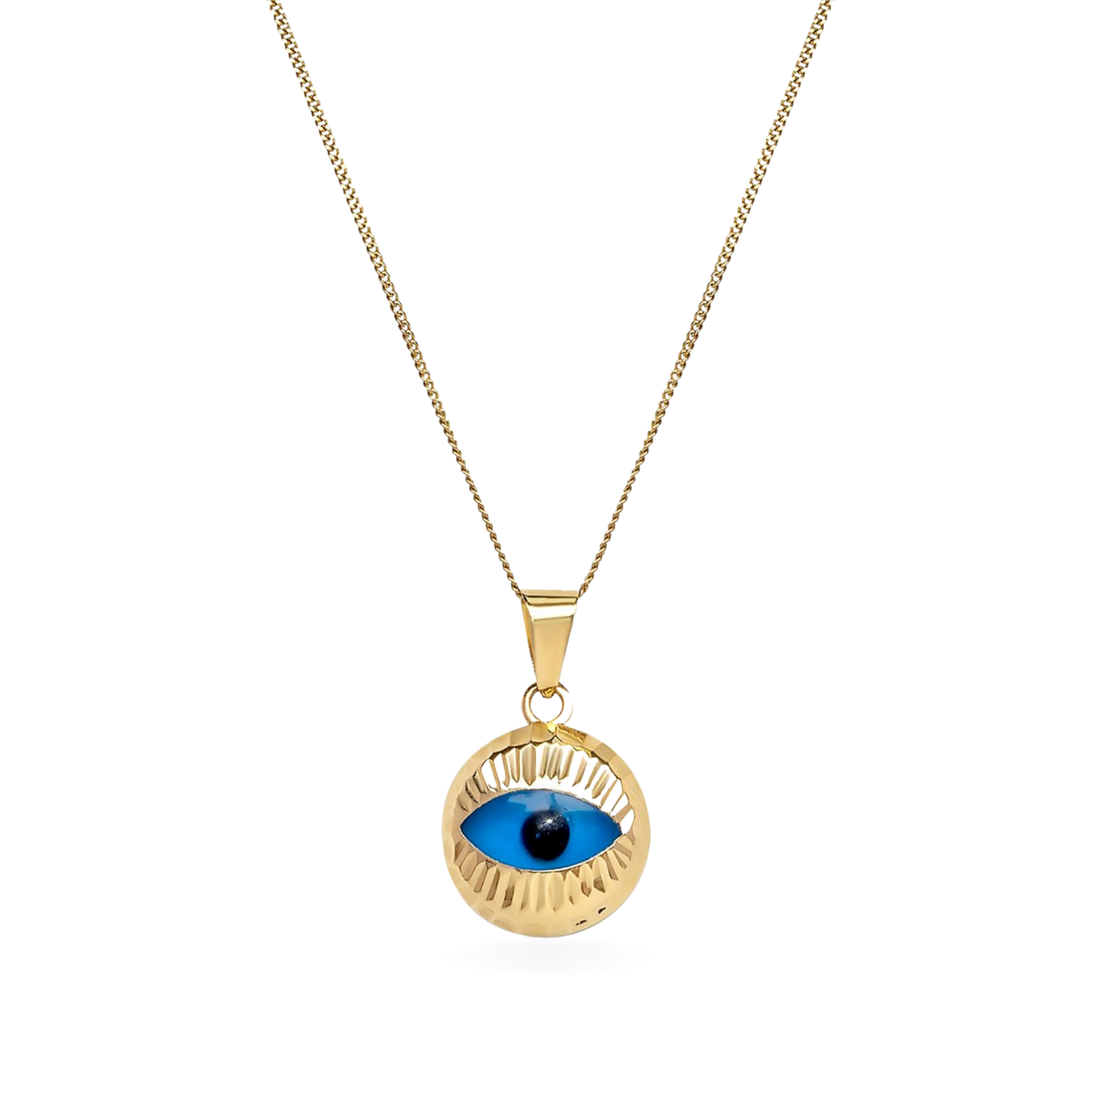 gold evil eye toronto 2021, gold evil eye toronto jewelry, evil eye jewelry canada, evil eye necklace canada